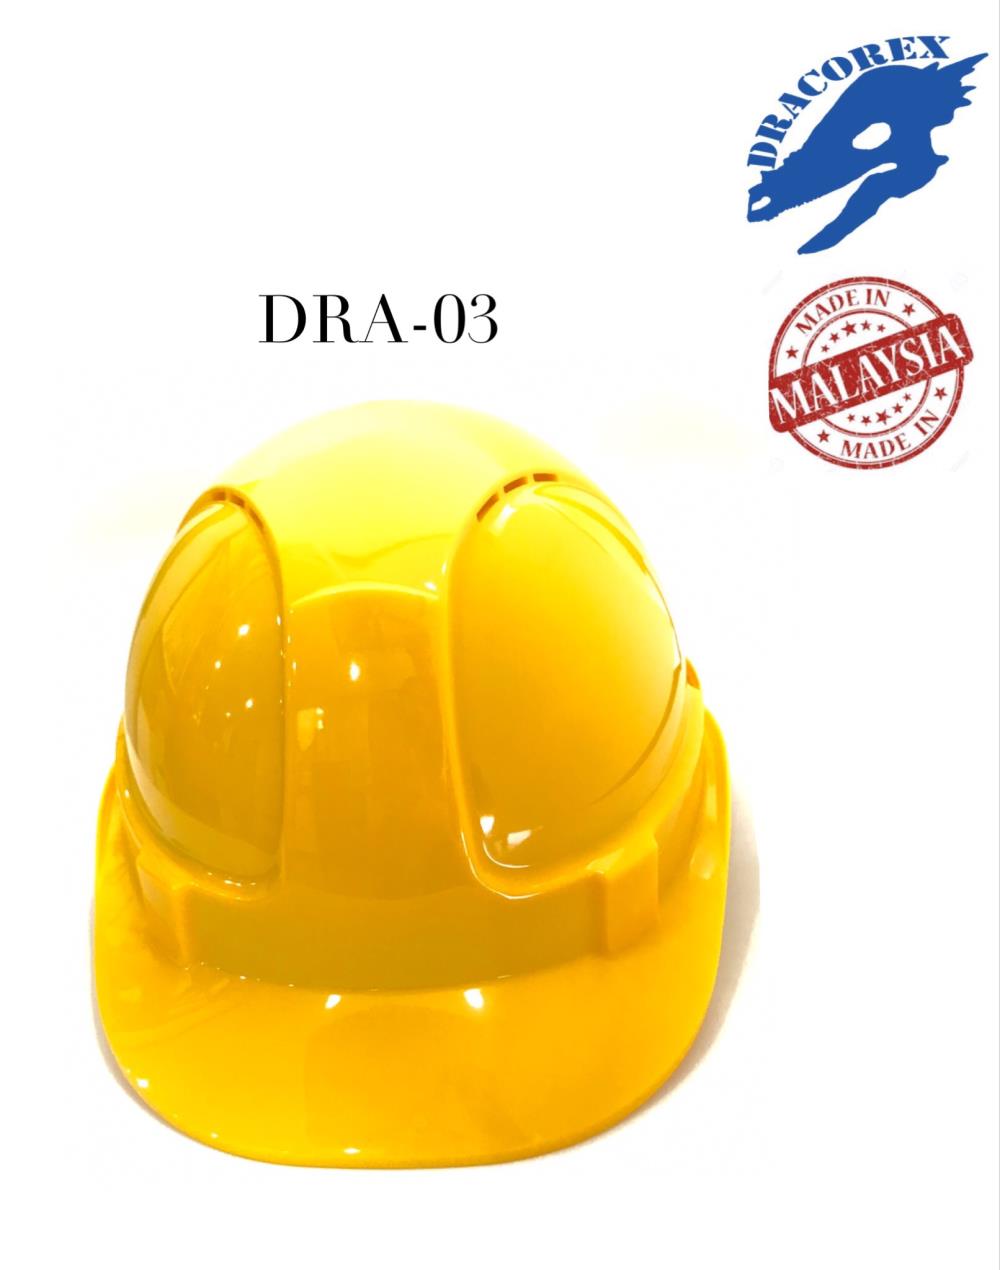 หมวกนิรภัย,หมวกนิรภัย,DRACOREX,Plant and Facility Equipment/Safety Equipment/Head & Face Protection Equipment